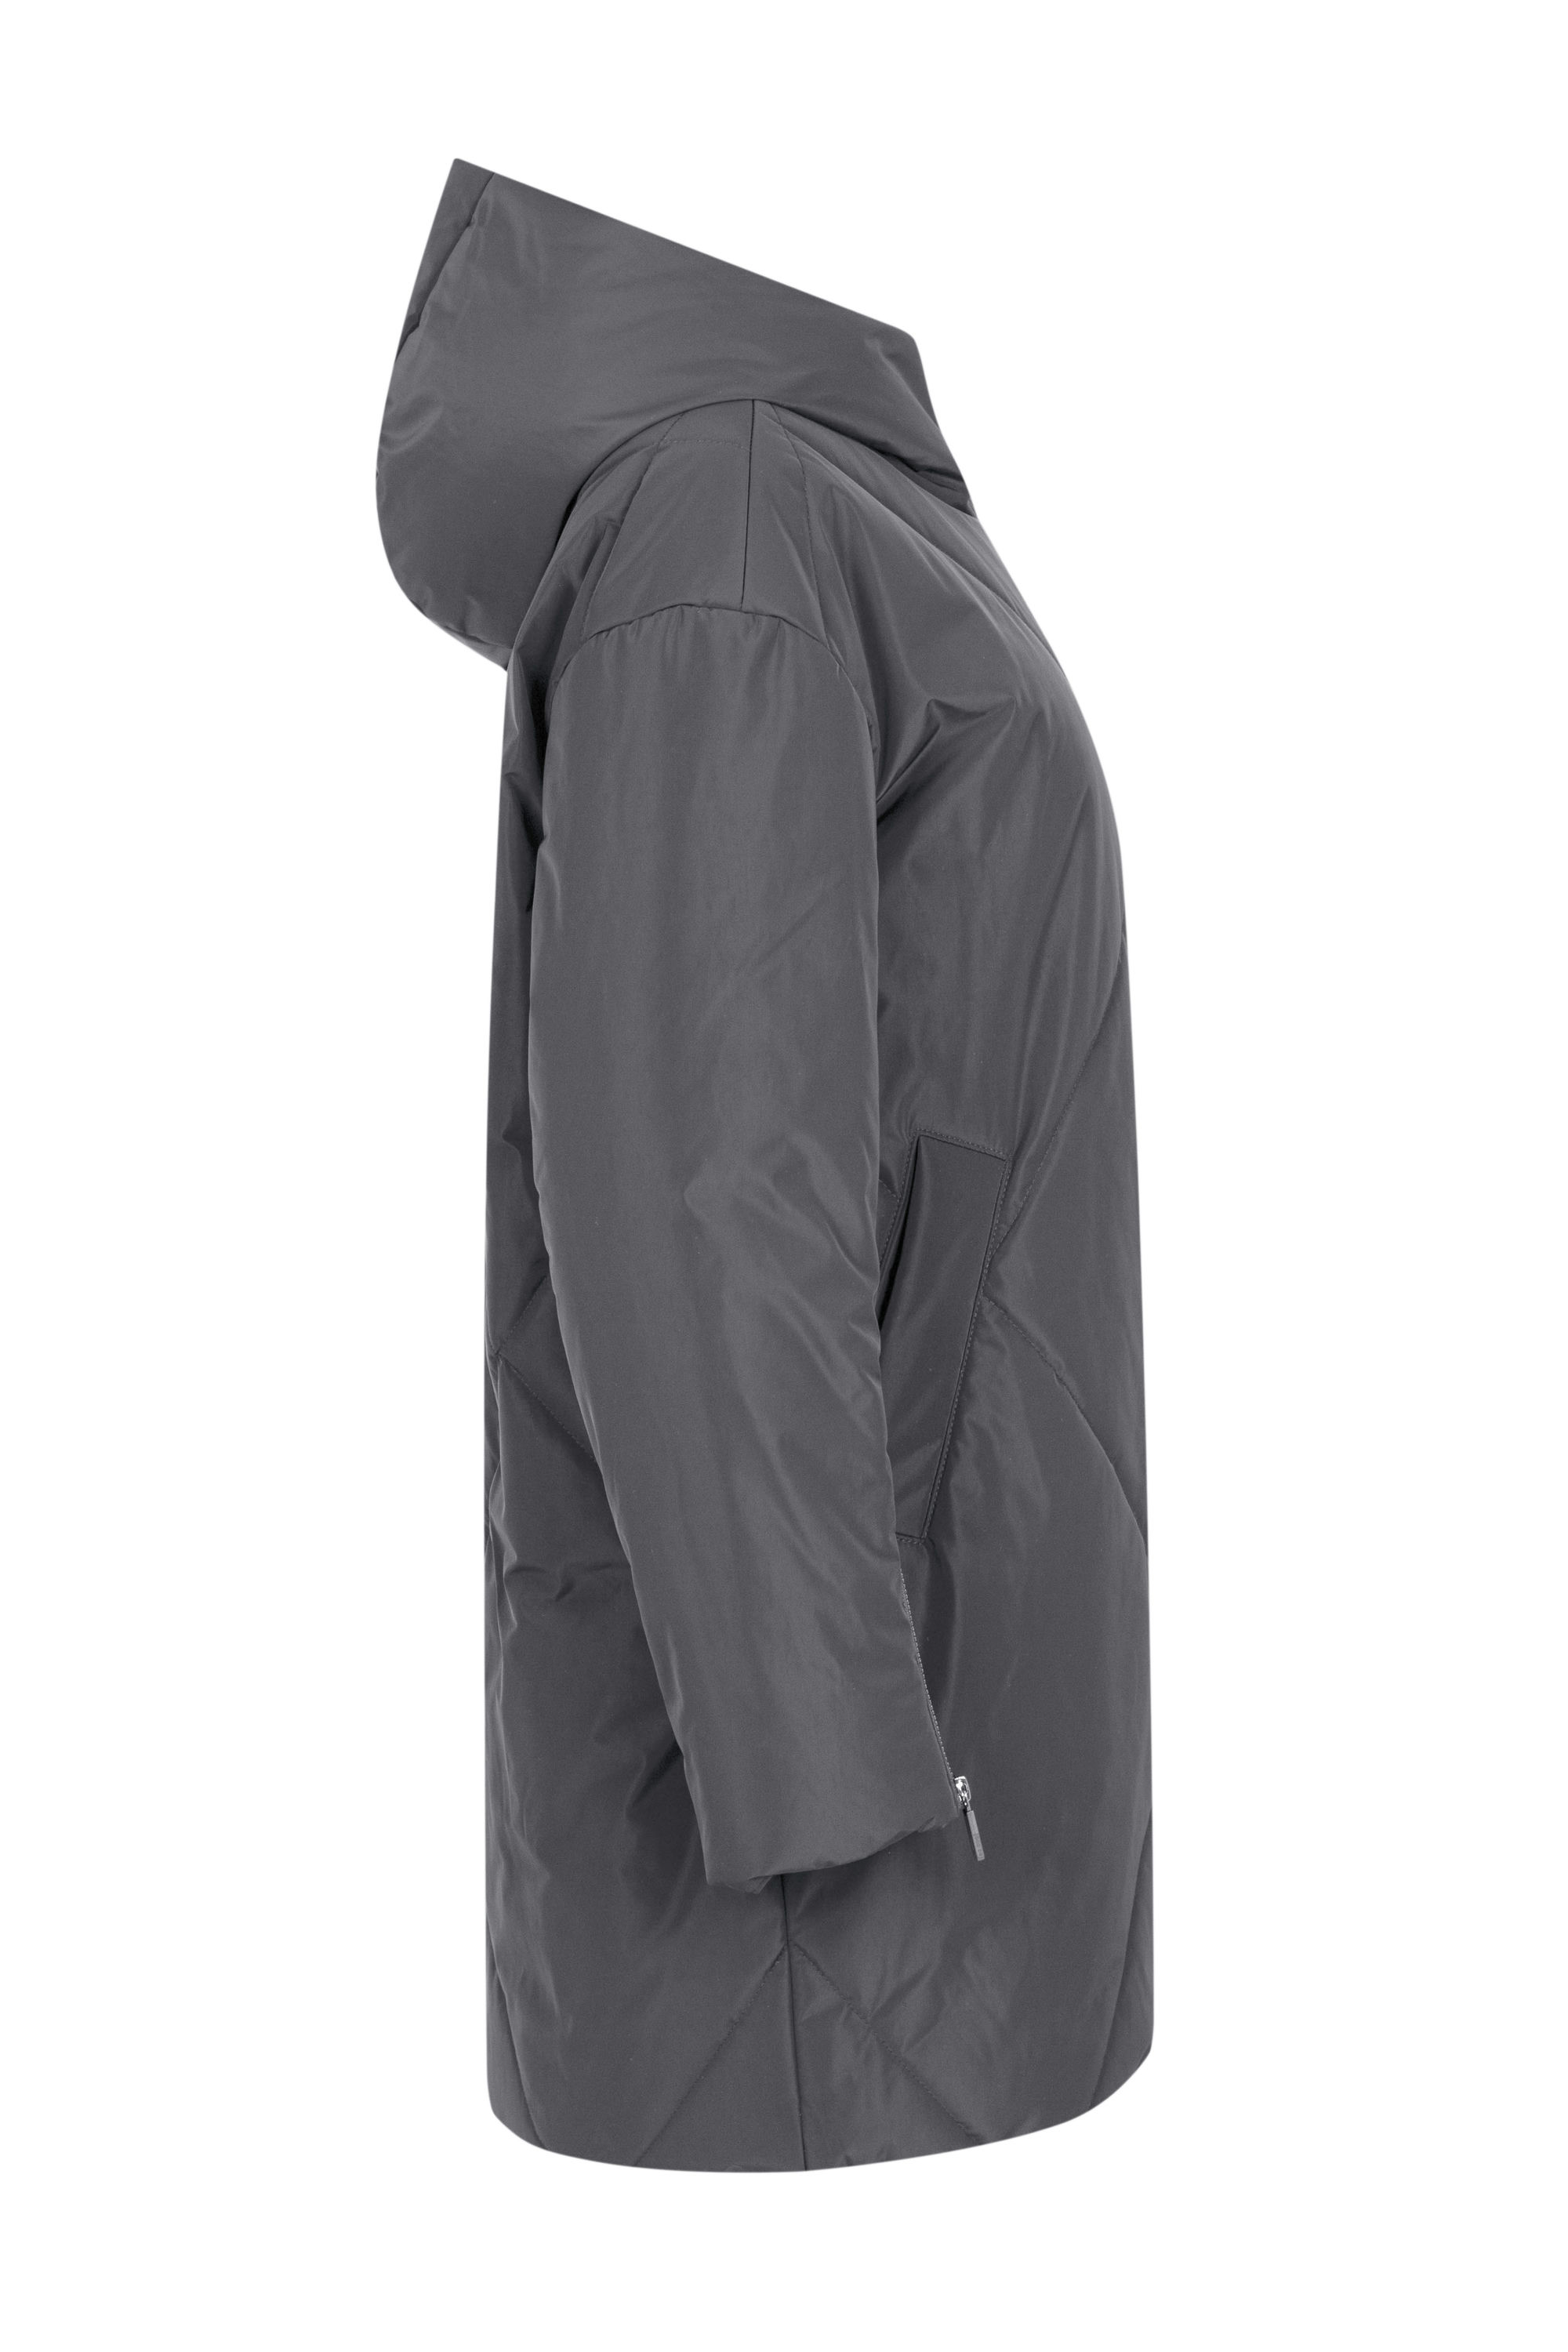 Пальто женское плащевое утепленное 5S-13035-1